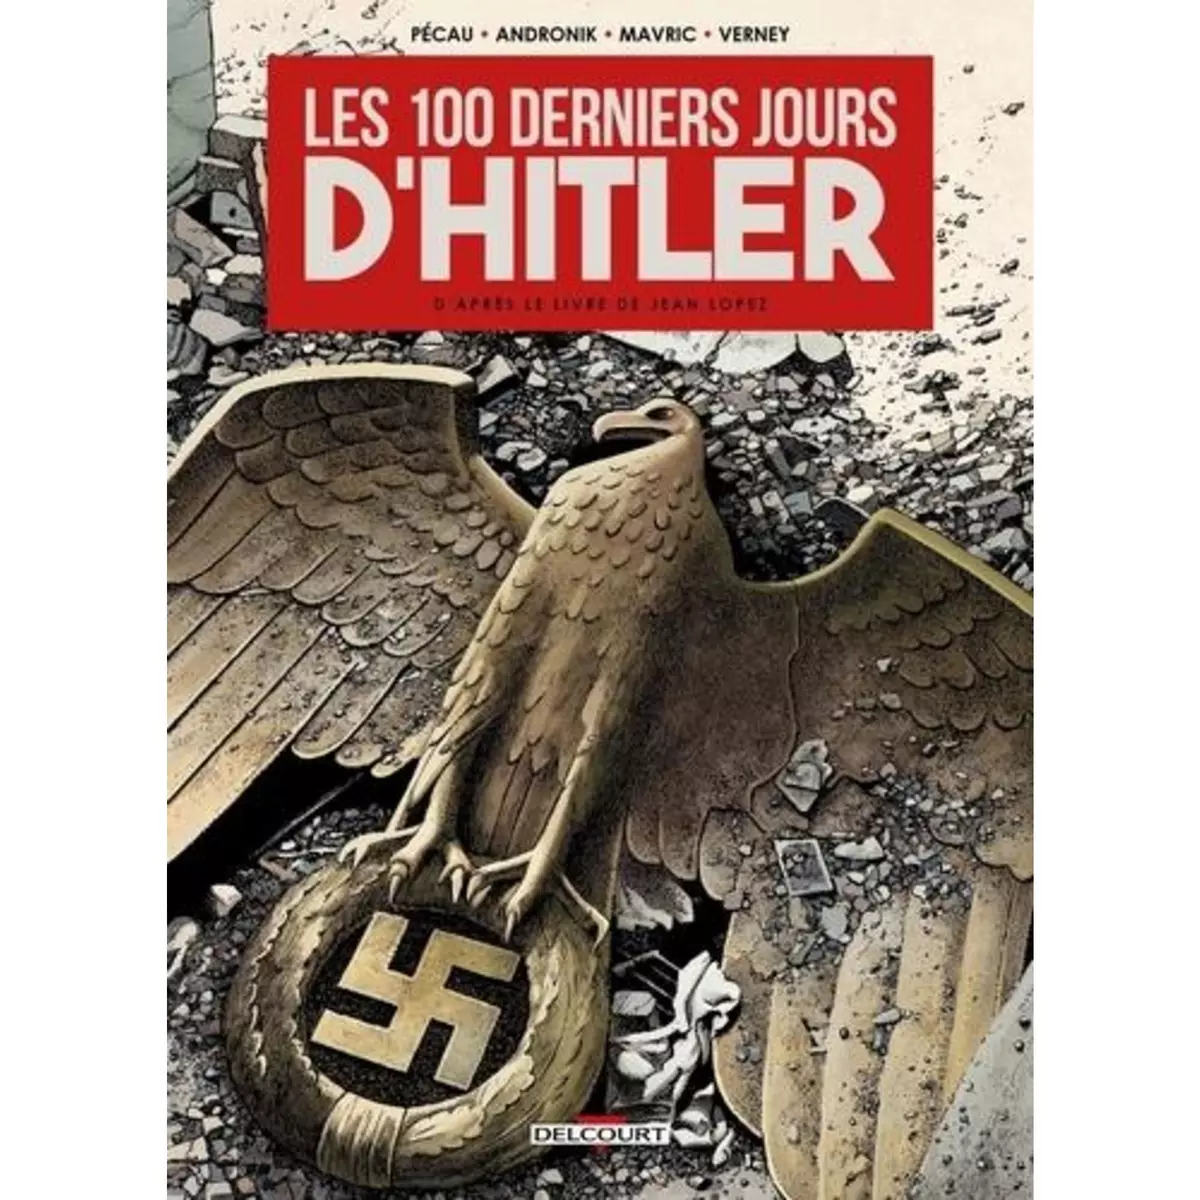  LES 100 DERNIERS JOURS D'HITLER, Pécau Jean-Pierre